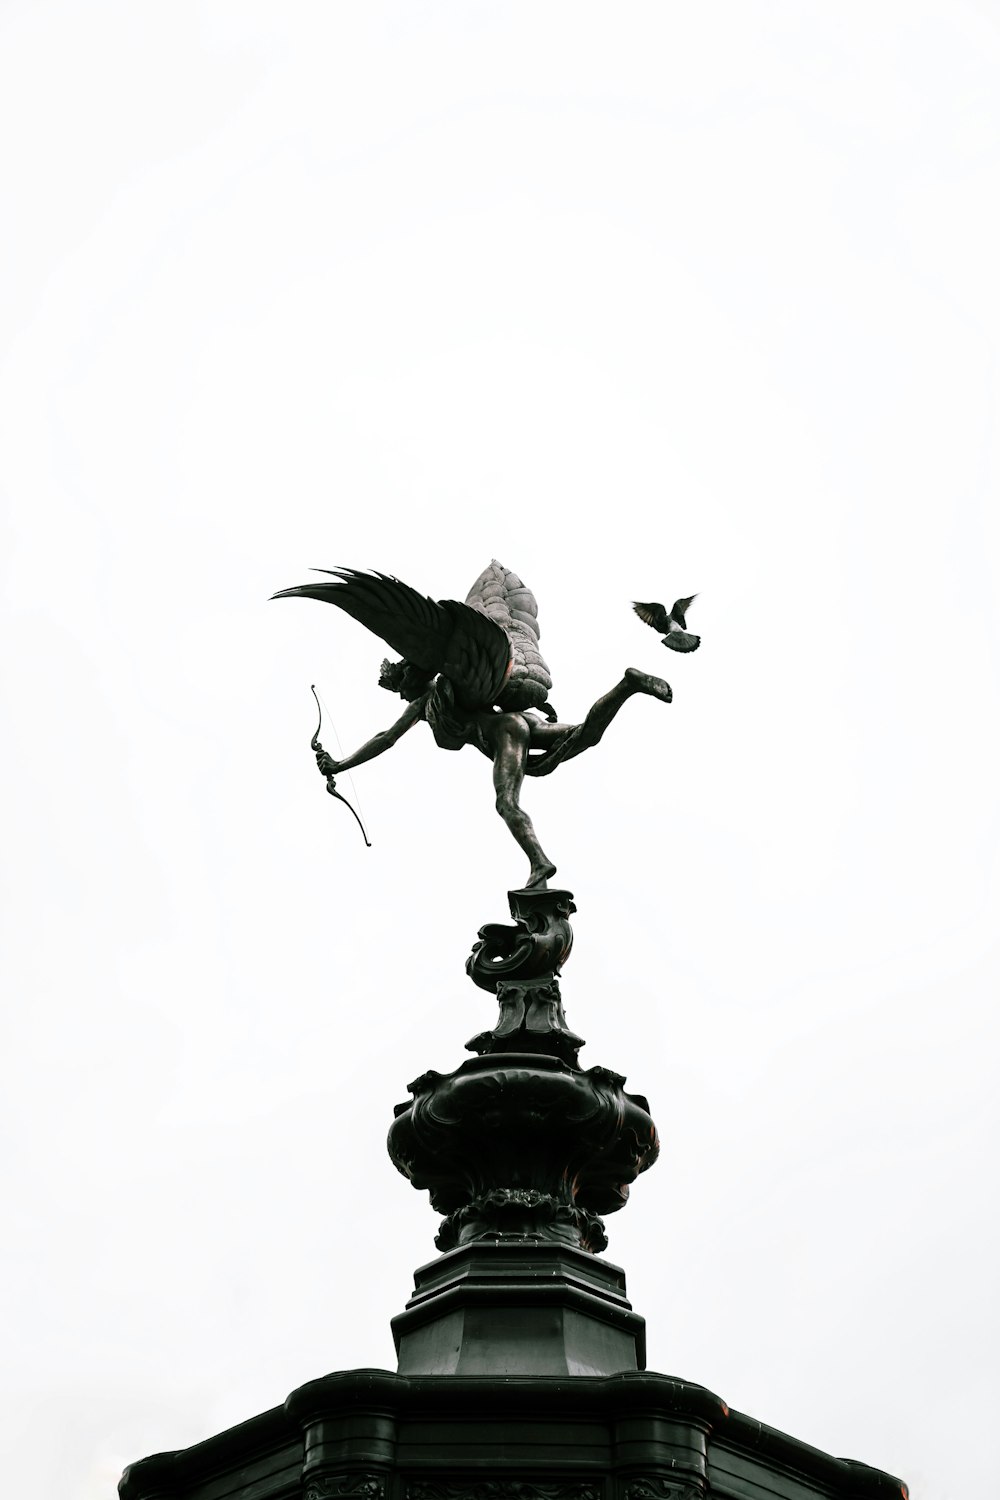 昼間の白い空の下に黒い鳥の像